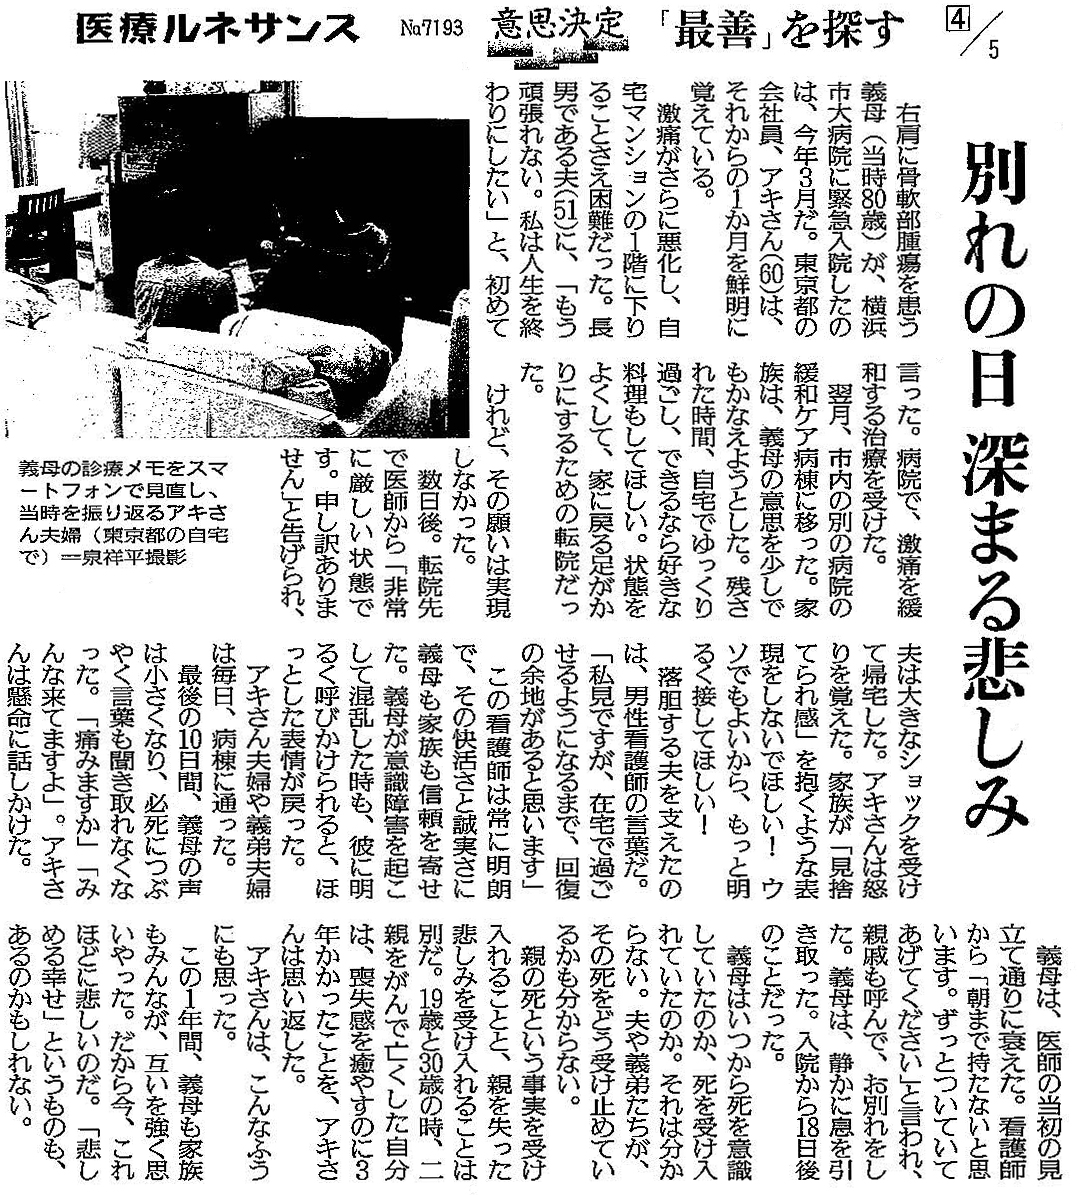 読売新聞 2019年12月26日掲載記事